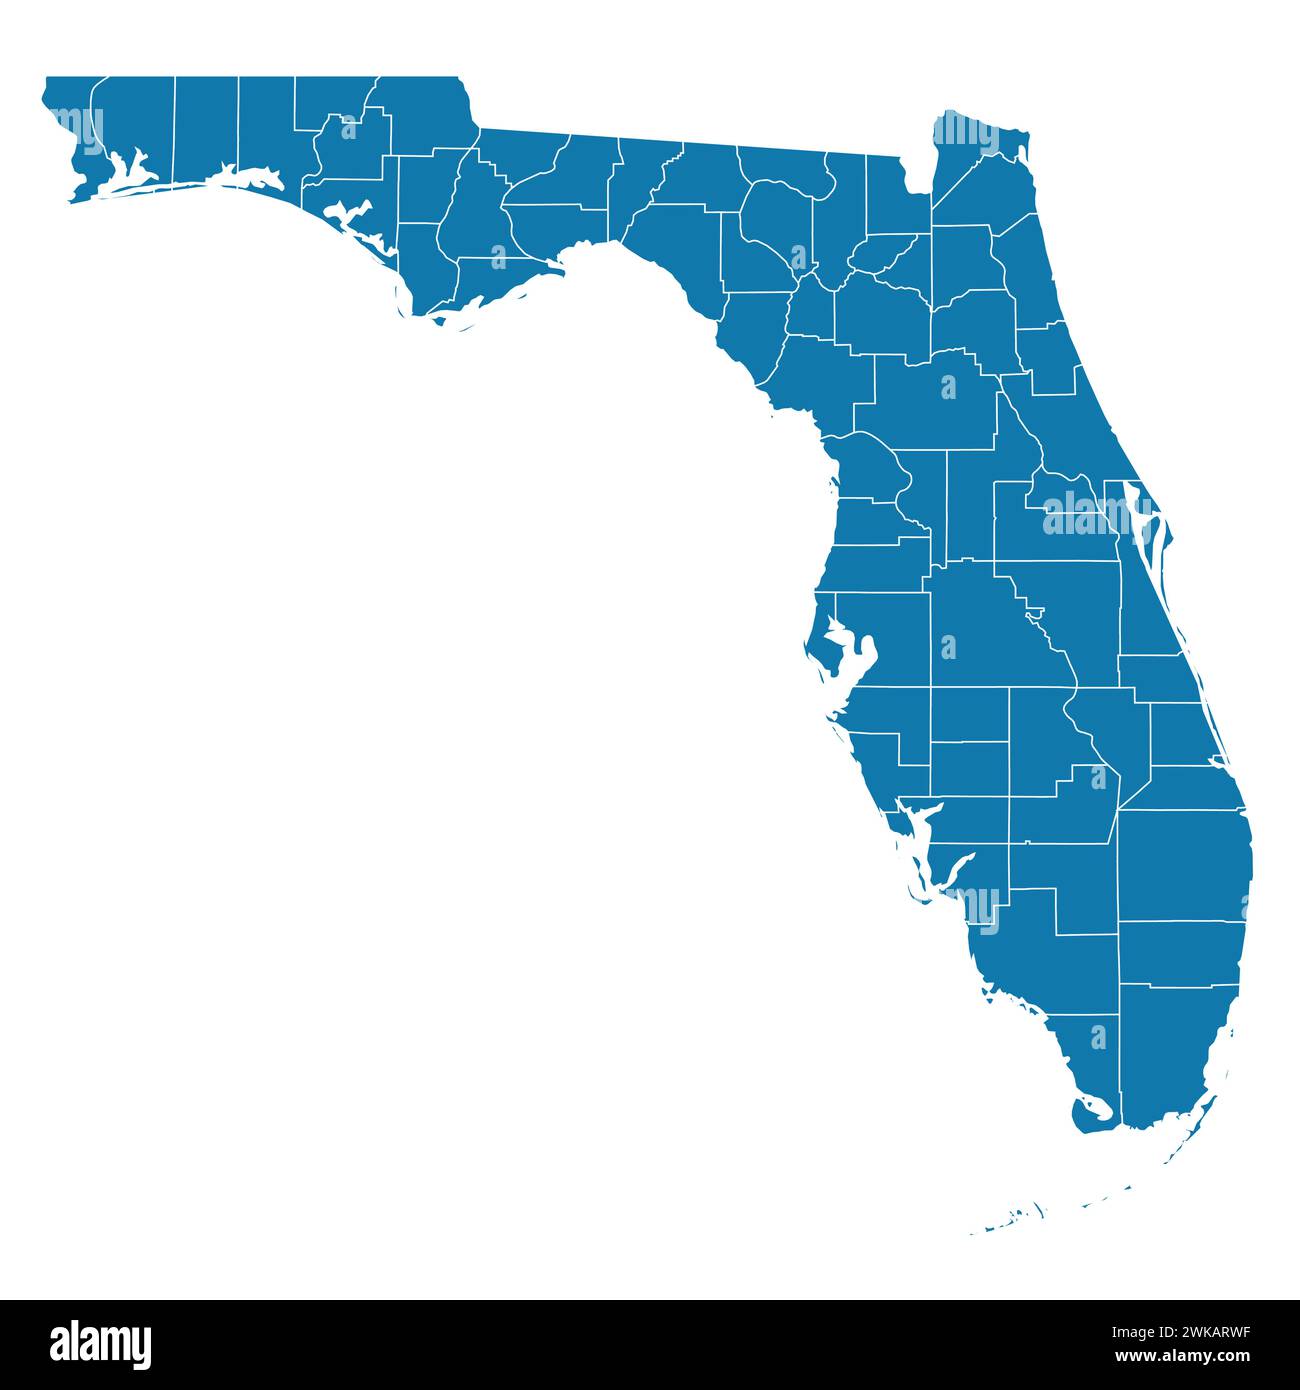 File vettoriale modificabile dello stato della Florida con contee incluse. Illustrazione Vettoriale